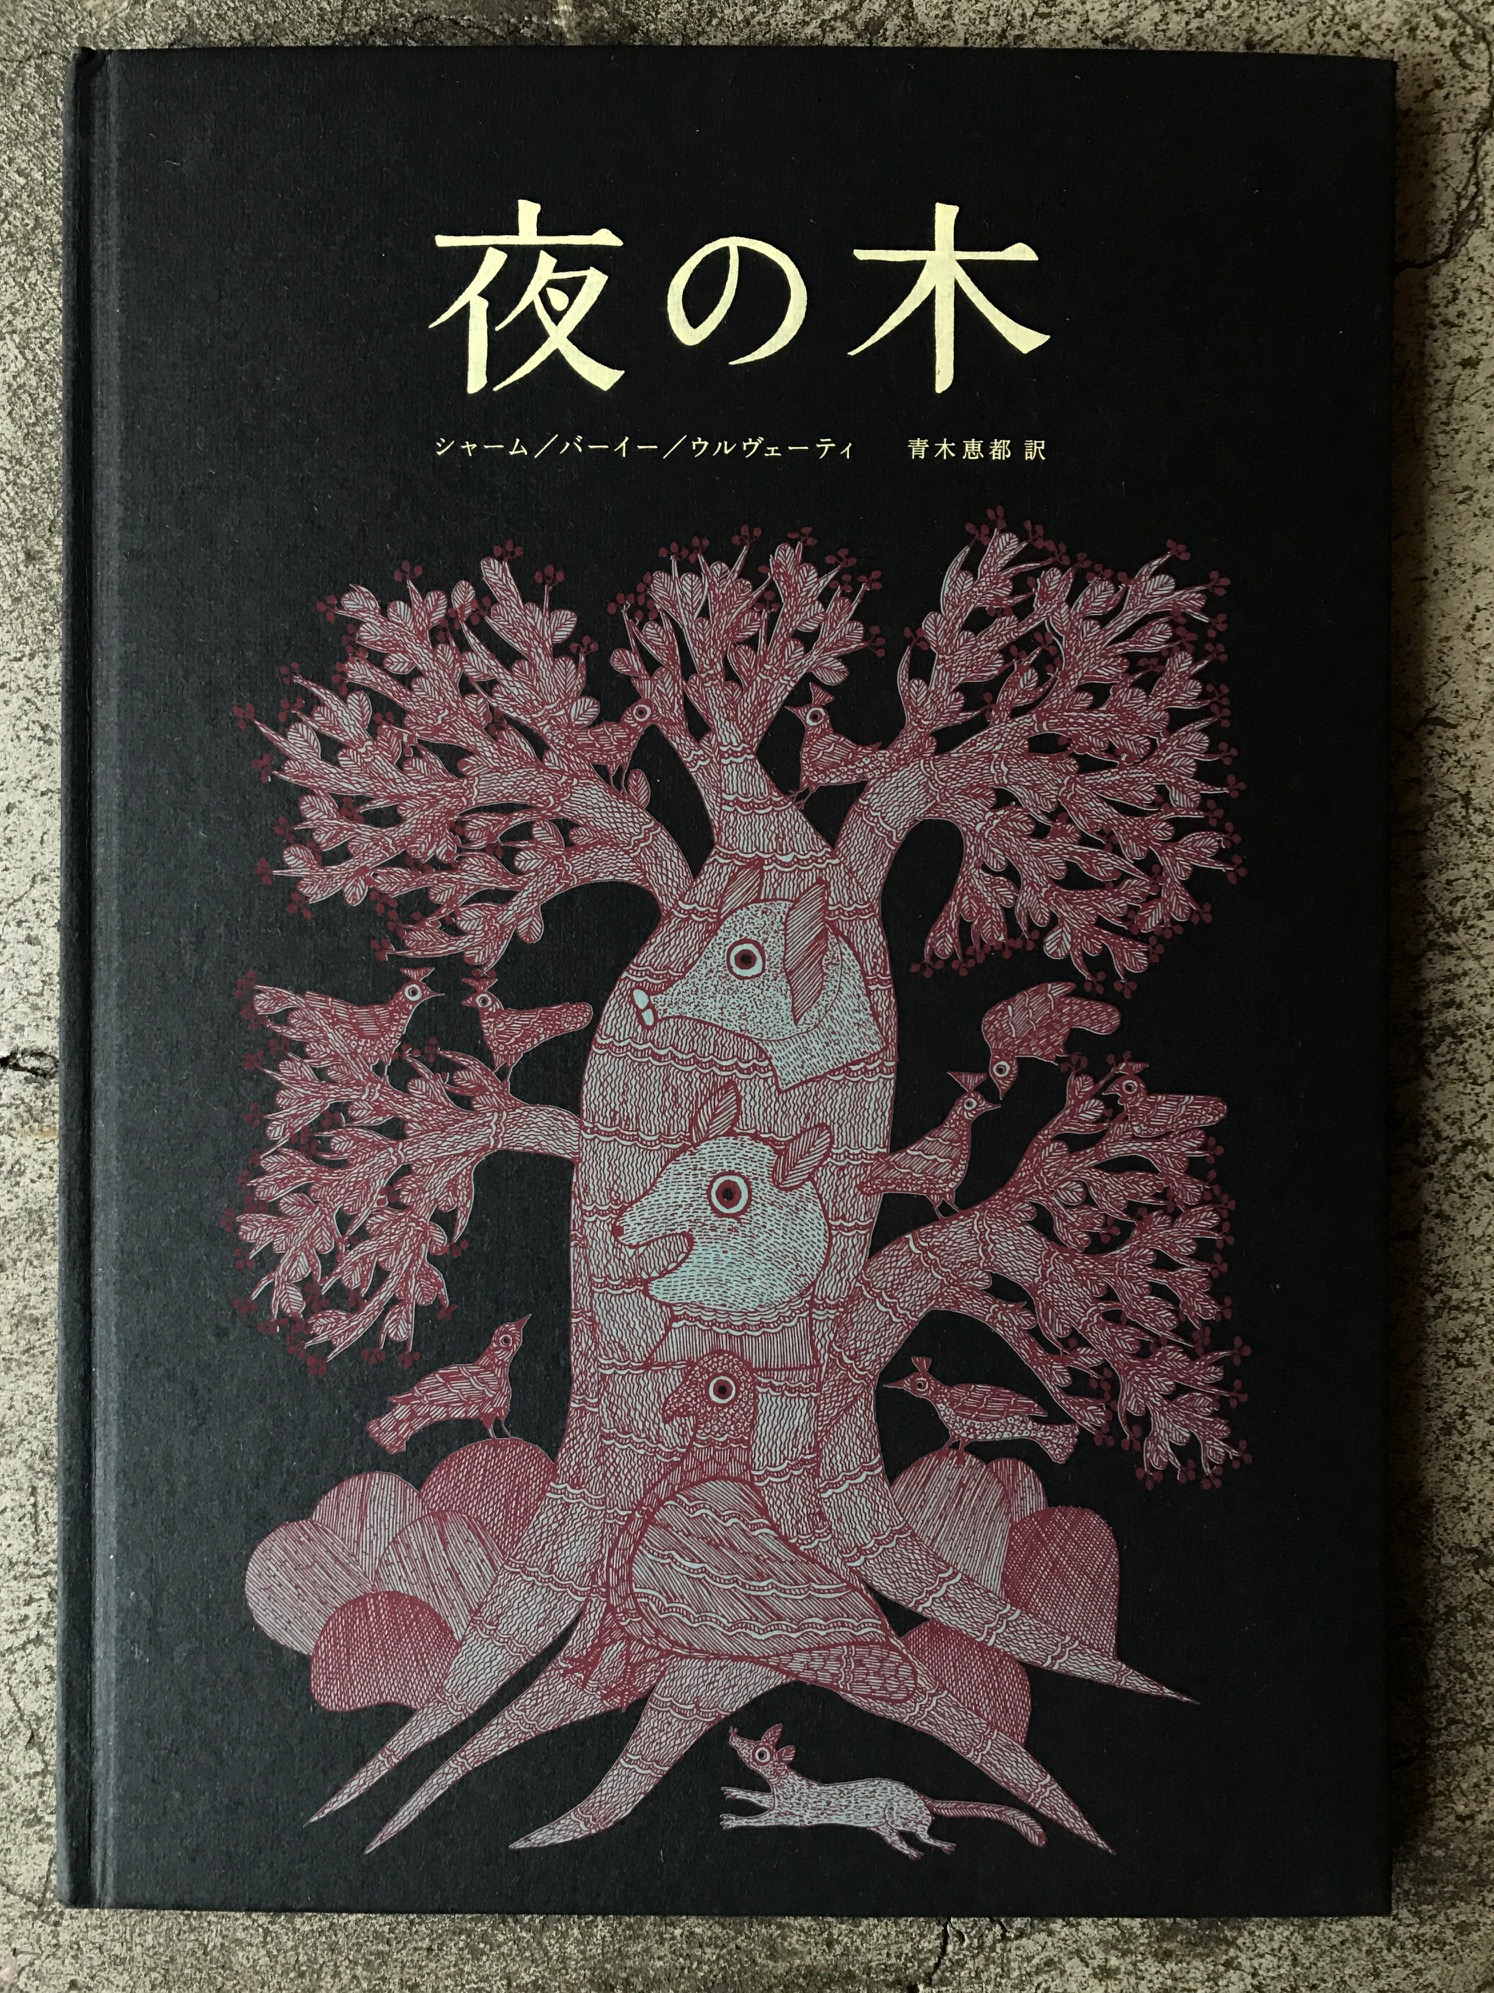 夜の木』第7刷発売記念 大判シルクスクリーン作品展 | OUTBOUND